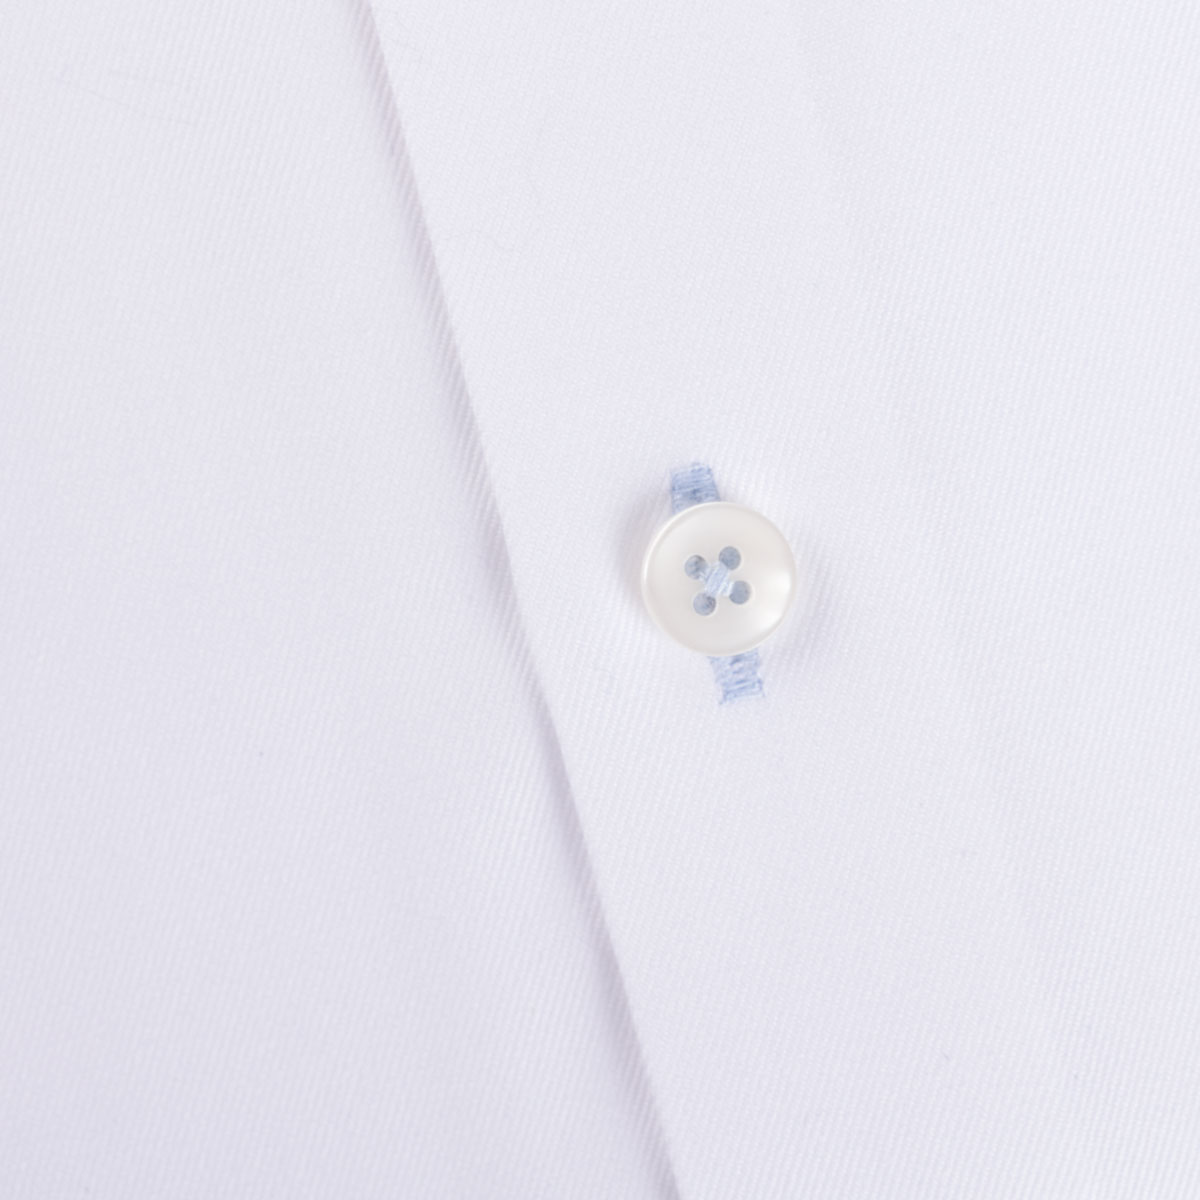 Slim Fit Hemd aus Baumwolle in weiß mit hellblauen Details